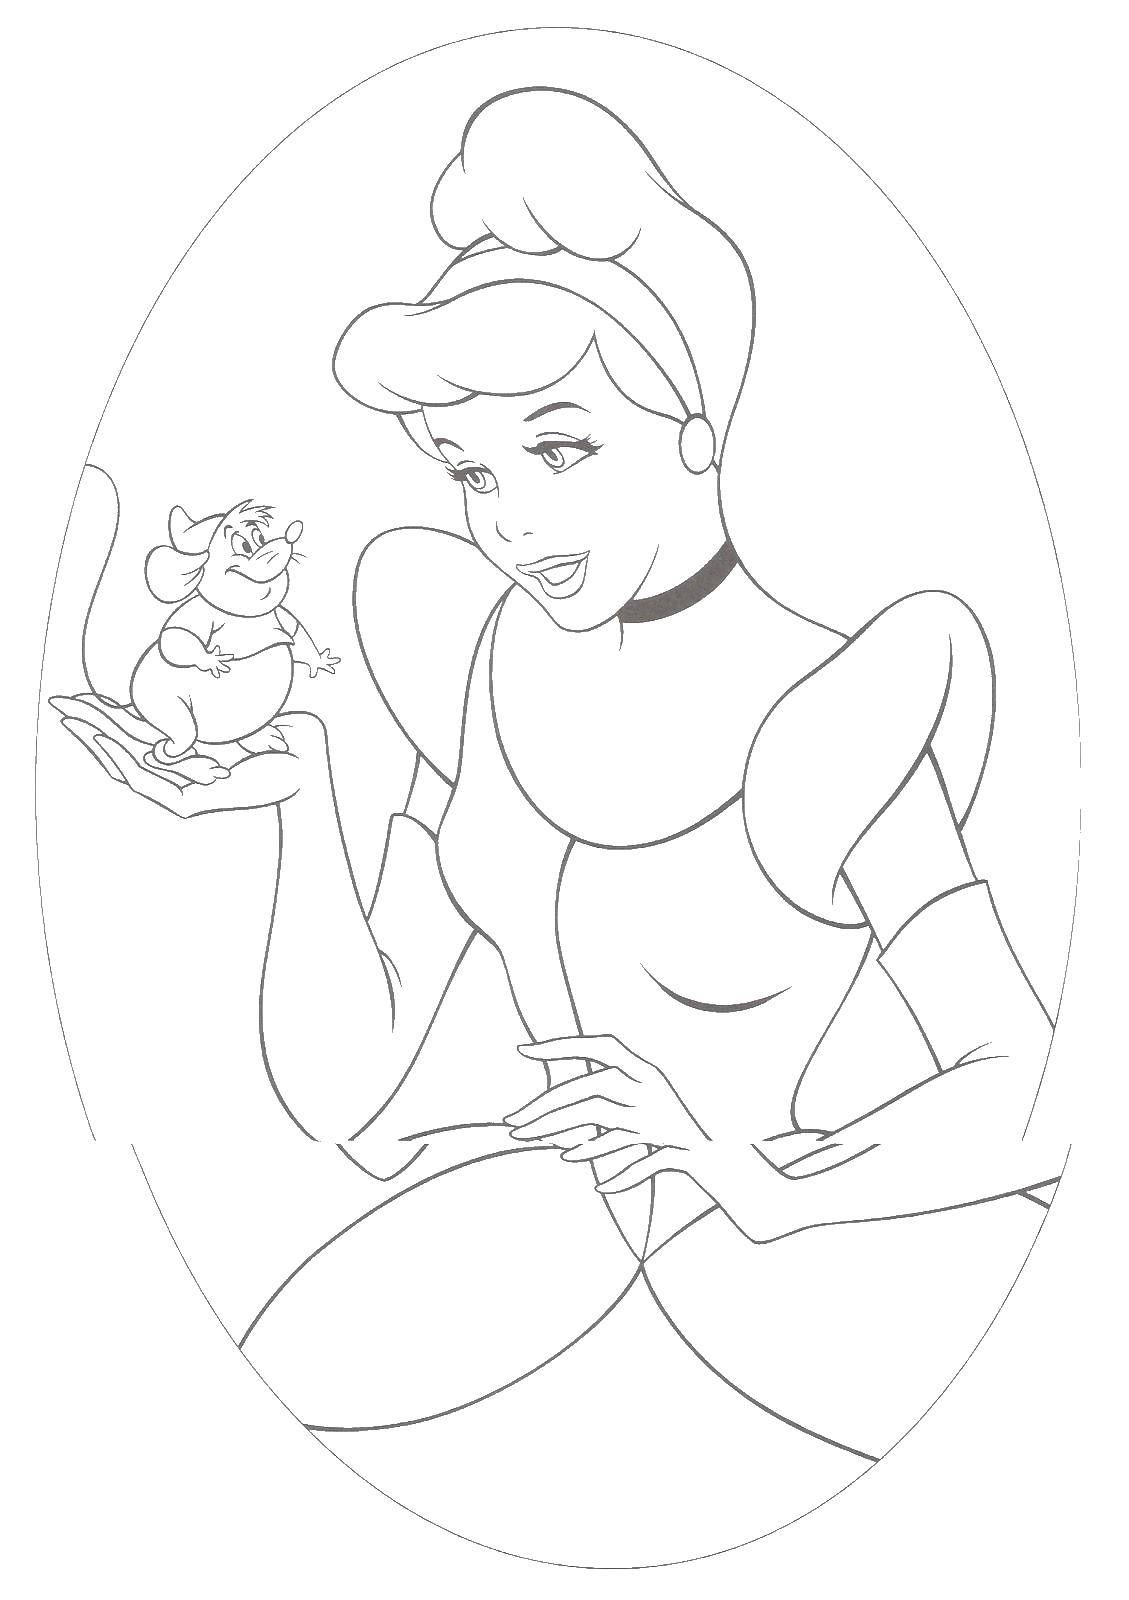 Название: Раскраска Золушка с мышкой. Категория: Принцессы. Теги: принцессы, мультфильмы, сказки, Золушка.